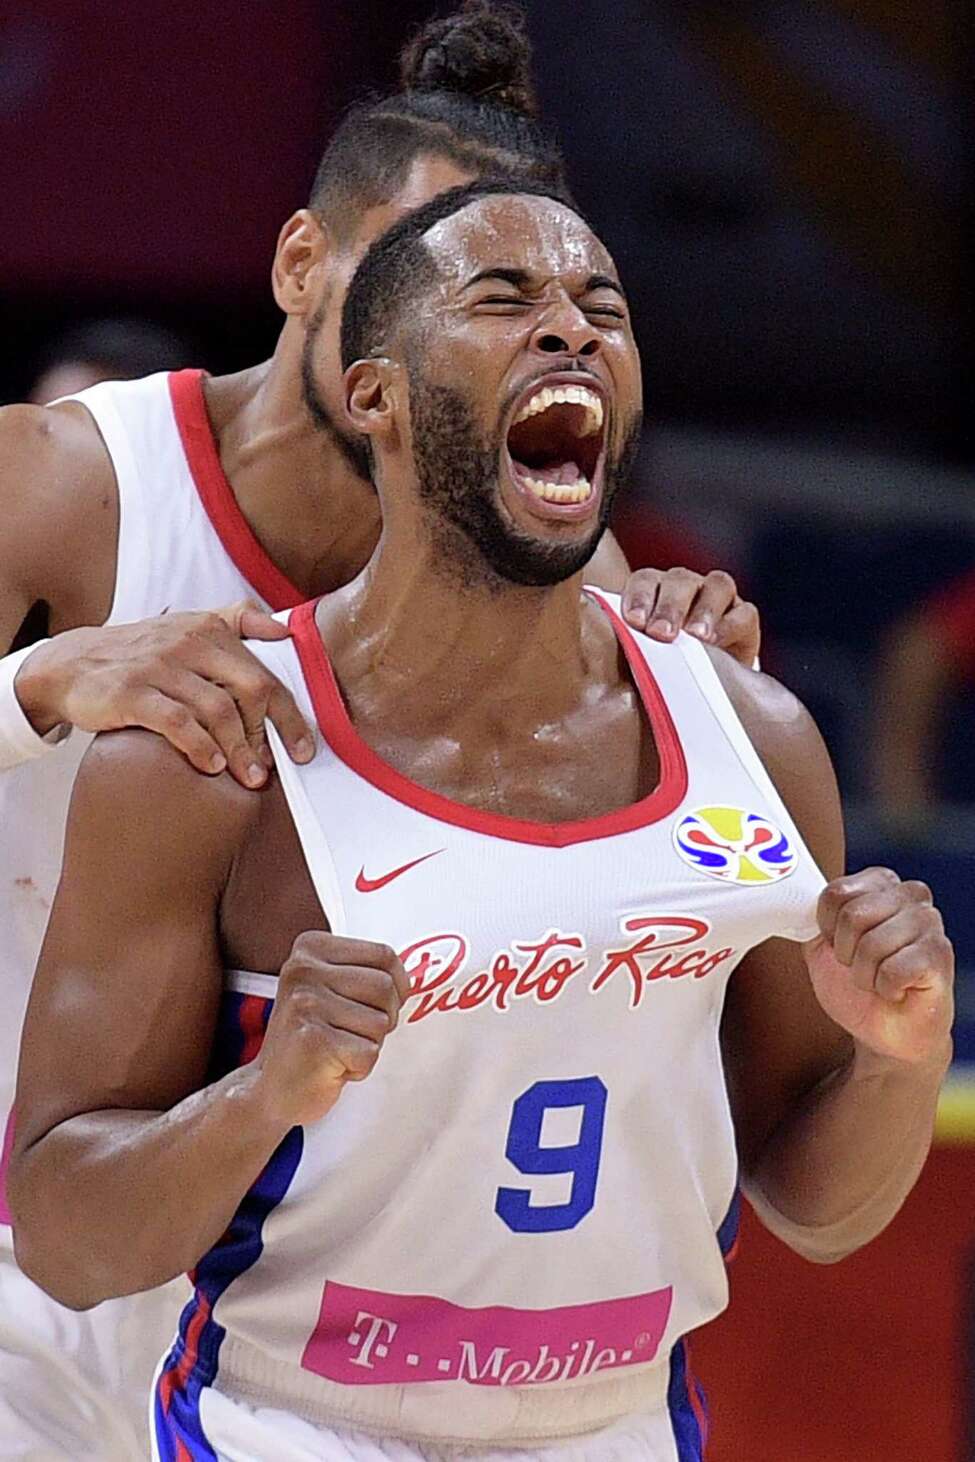 Puerto Rico rises at basketball World Cup